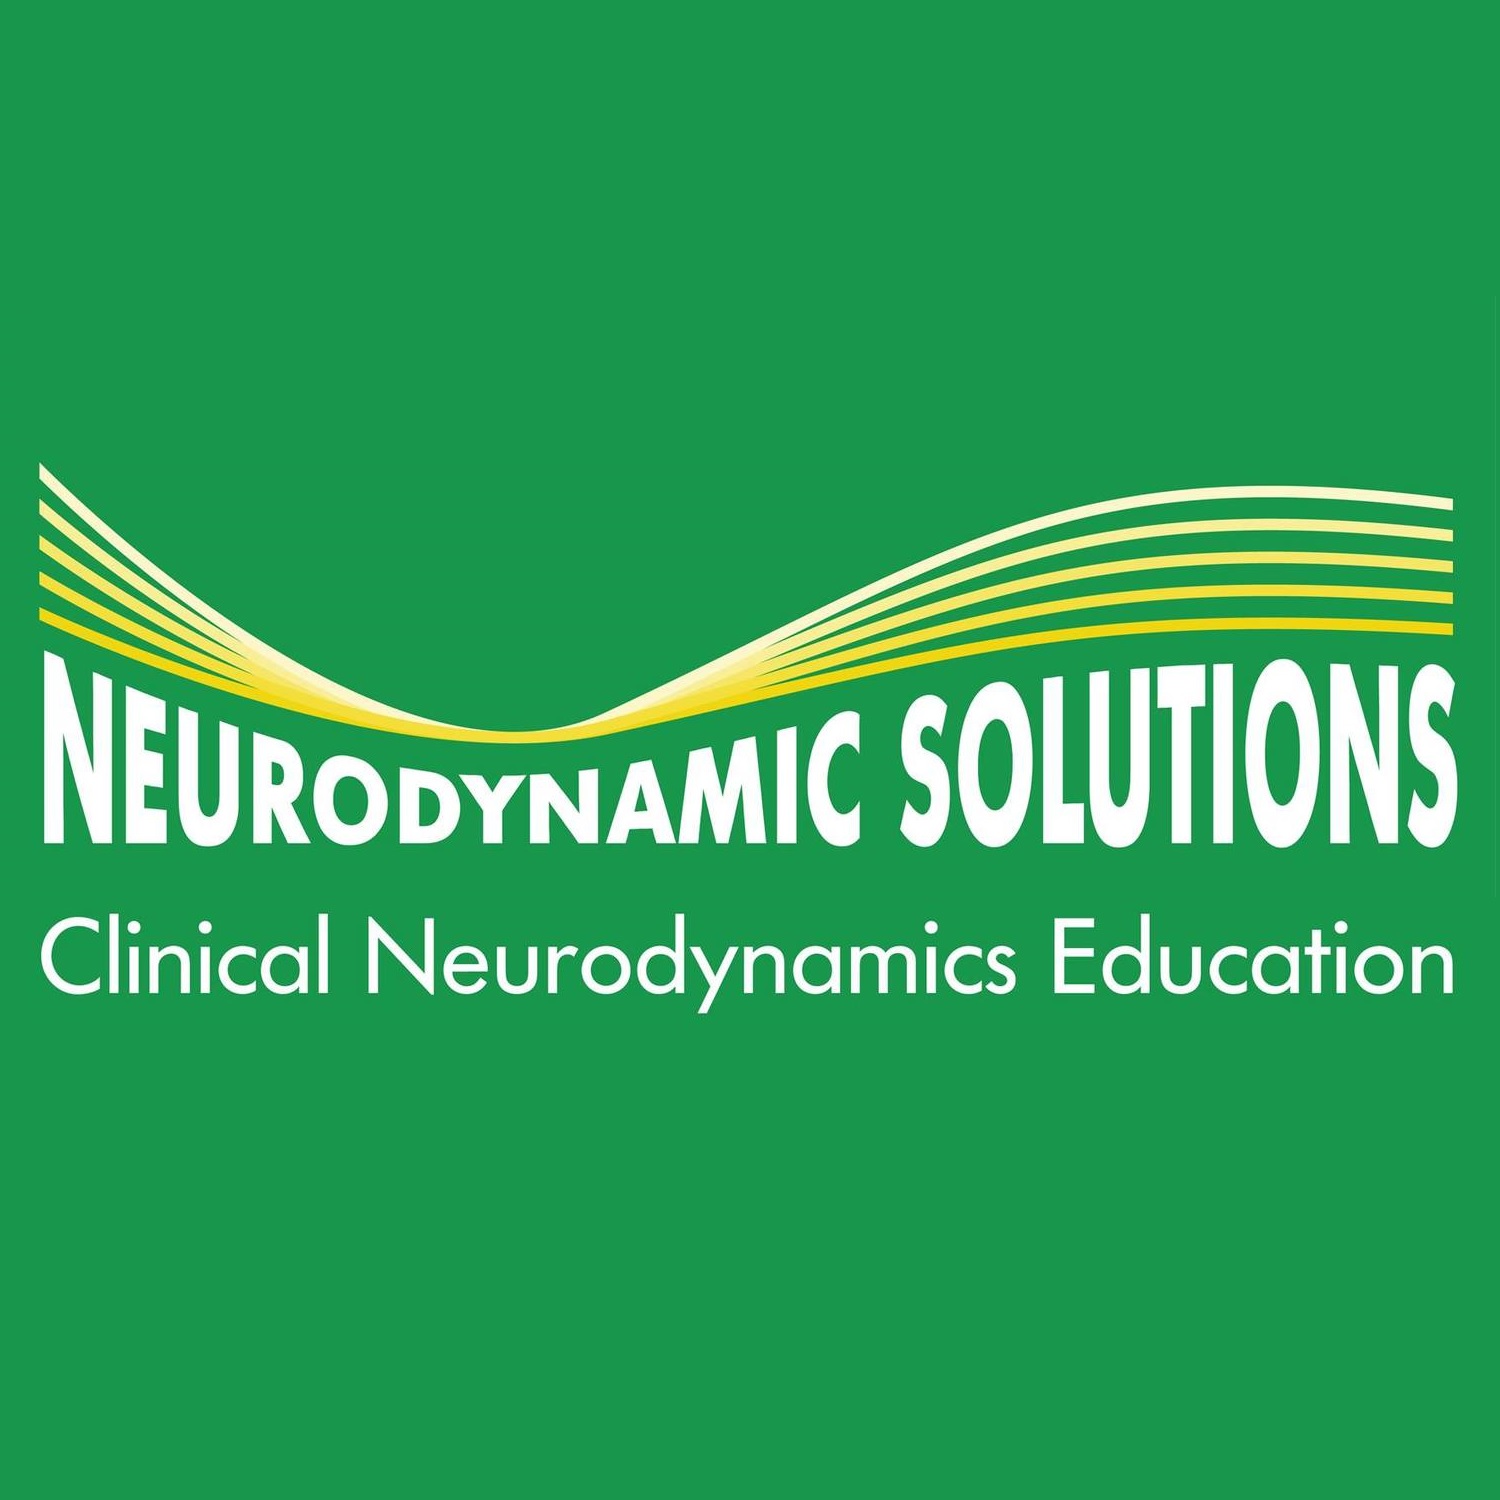 Neurodynamique clinique - Quadrant supérieur